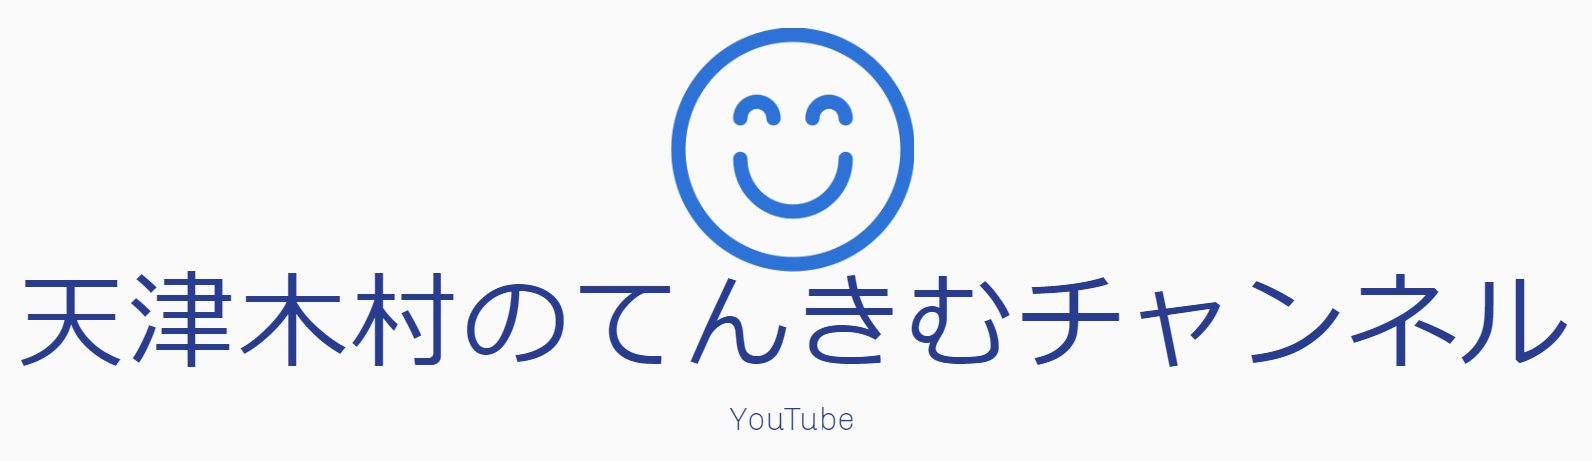 天津木村のてんきむチャンネル